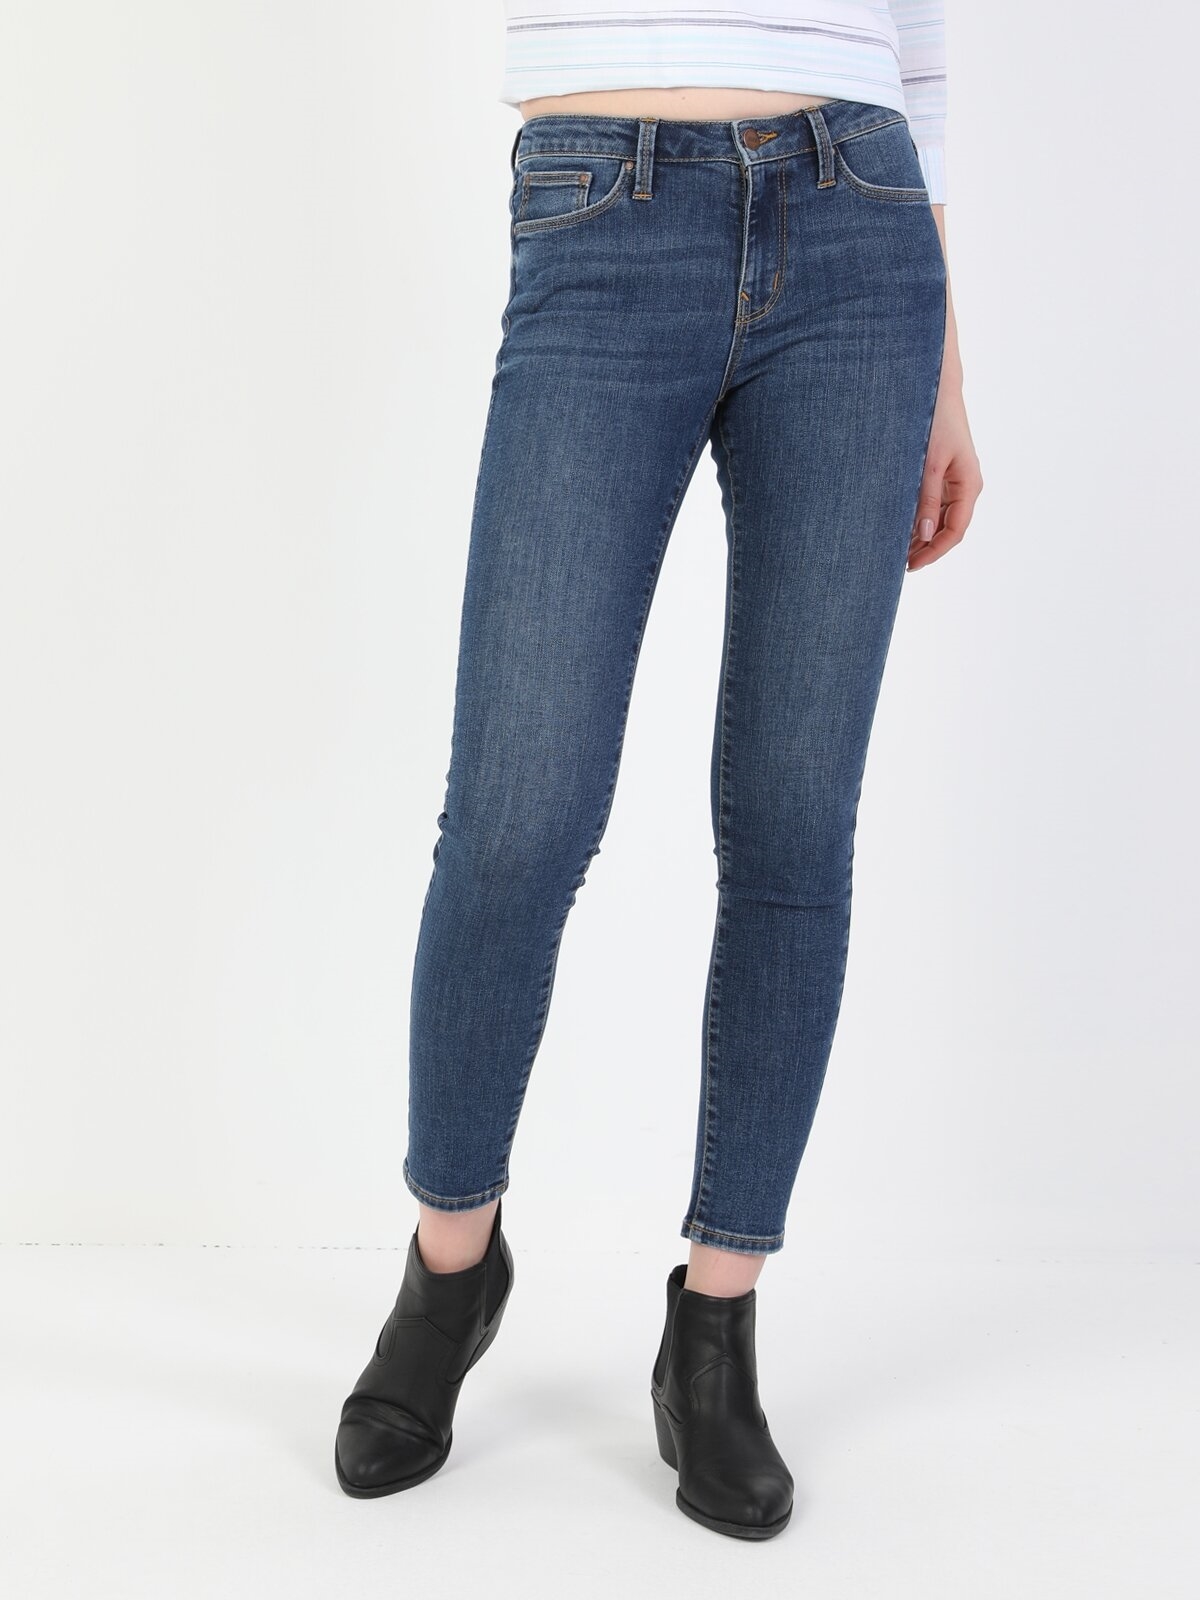 Afficher les détails de 759 Lara Pantalon En Jean Bleu Taille Moyenne À Jambe Étroite Et Coupe Super Slim Pour Femme